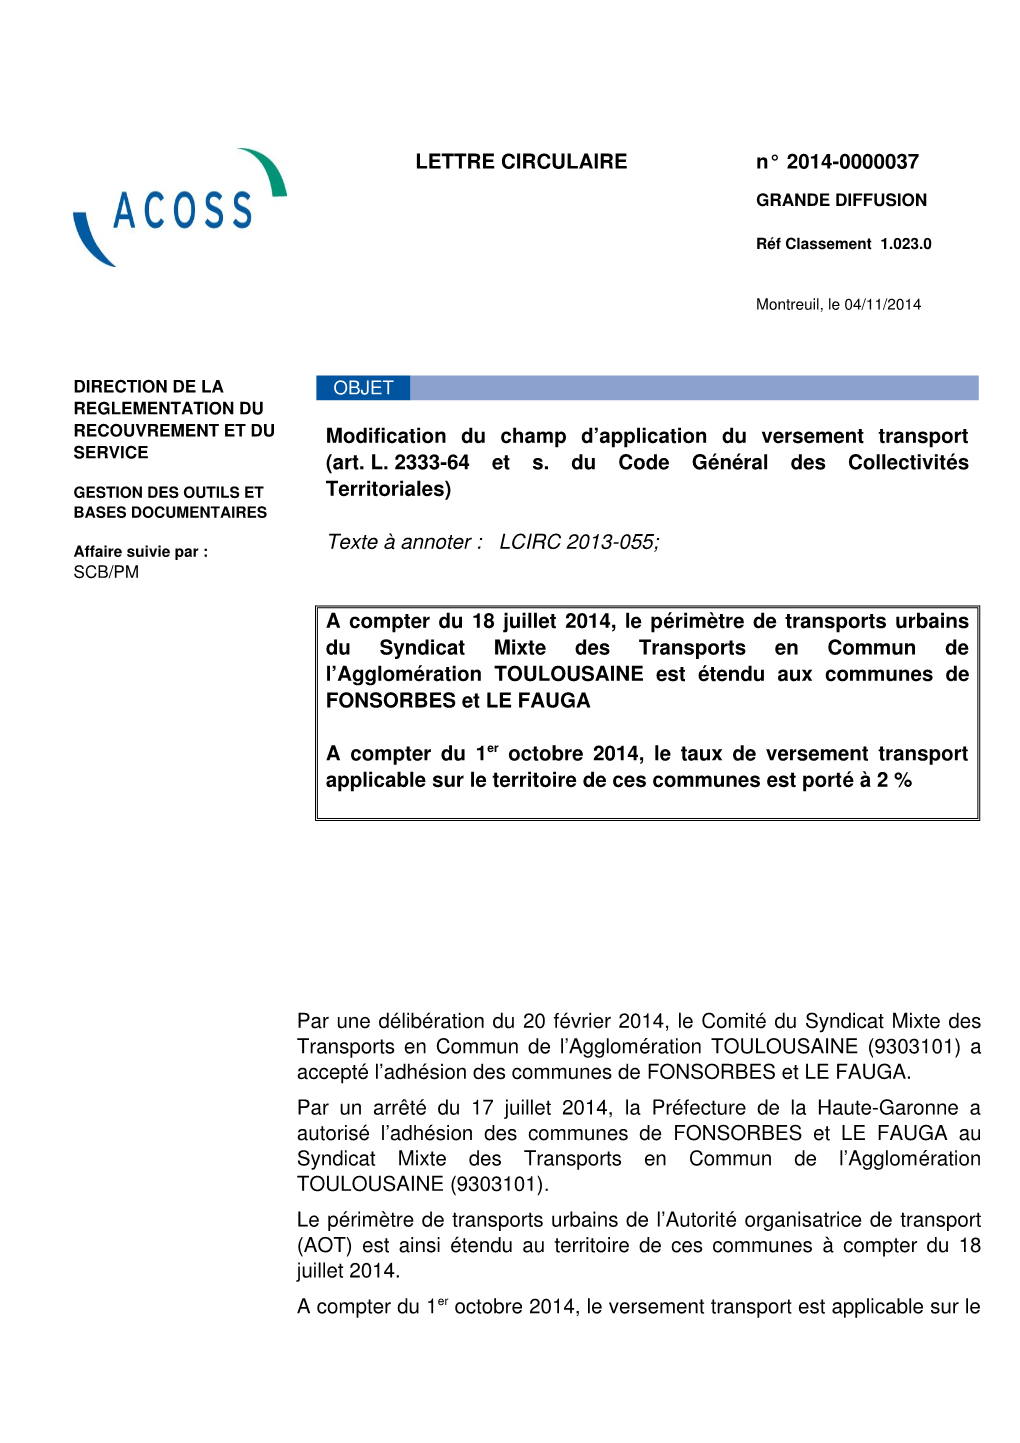 LETTRE CIRCULAIRE N° 20140000037 Modification Du Champ D'application Du Versement Transport